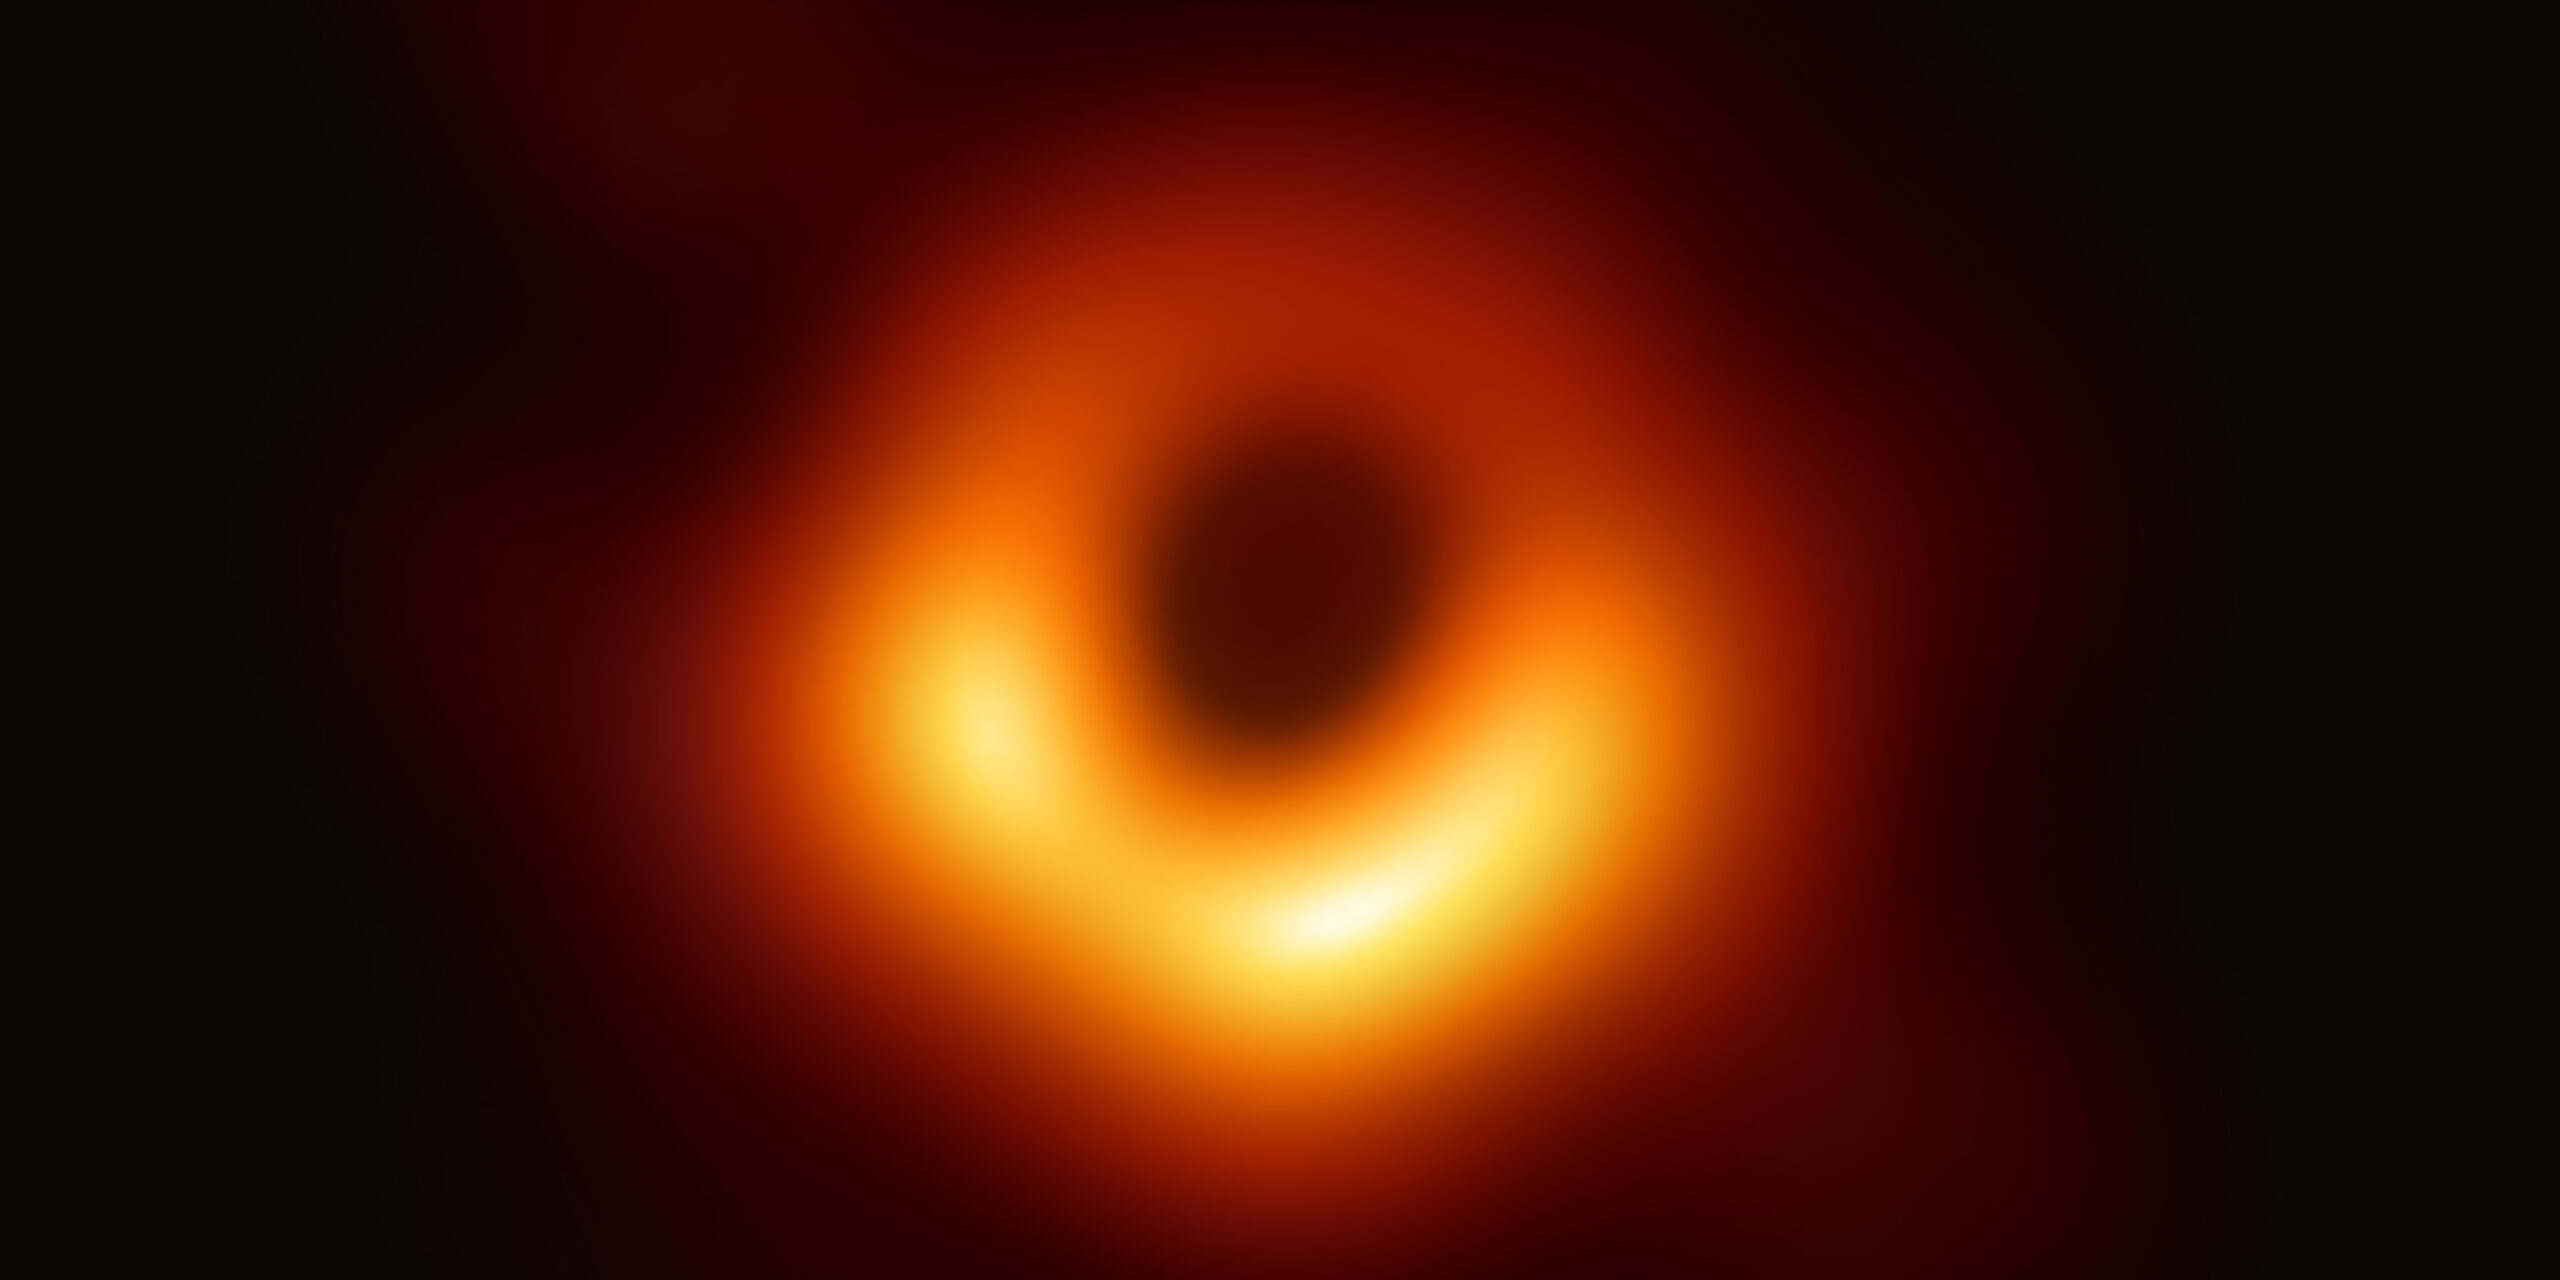 Чёрные дыры порождают внутри себя новые миниатюрные вселенные